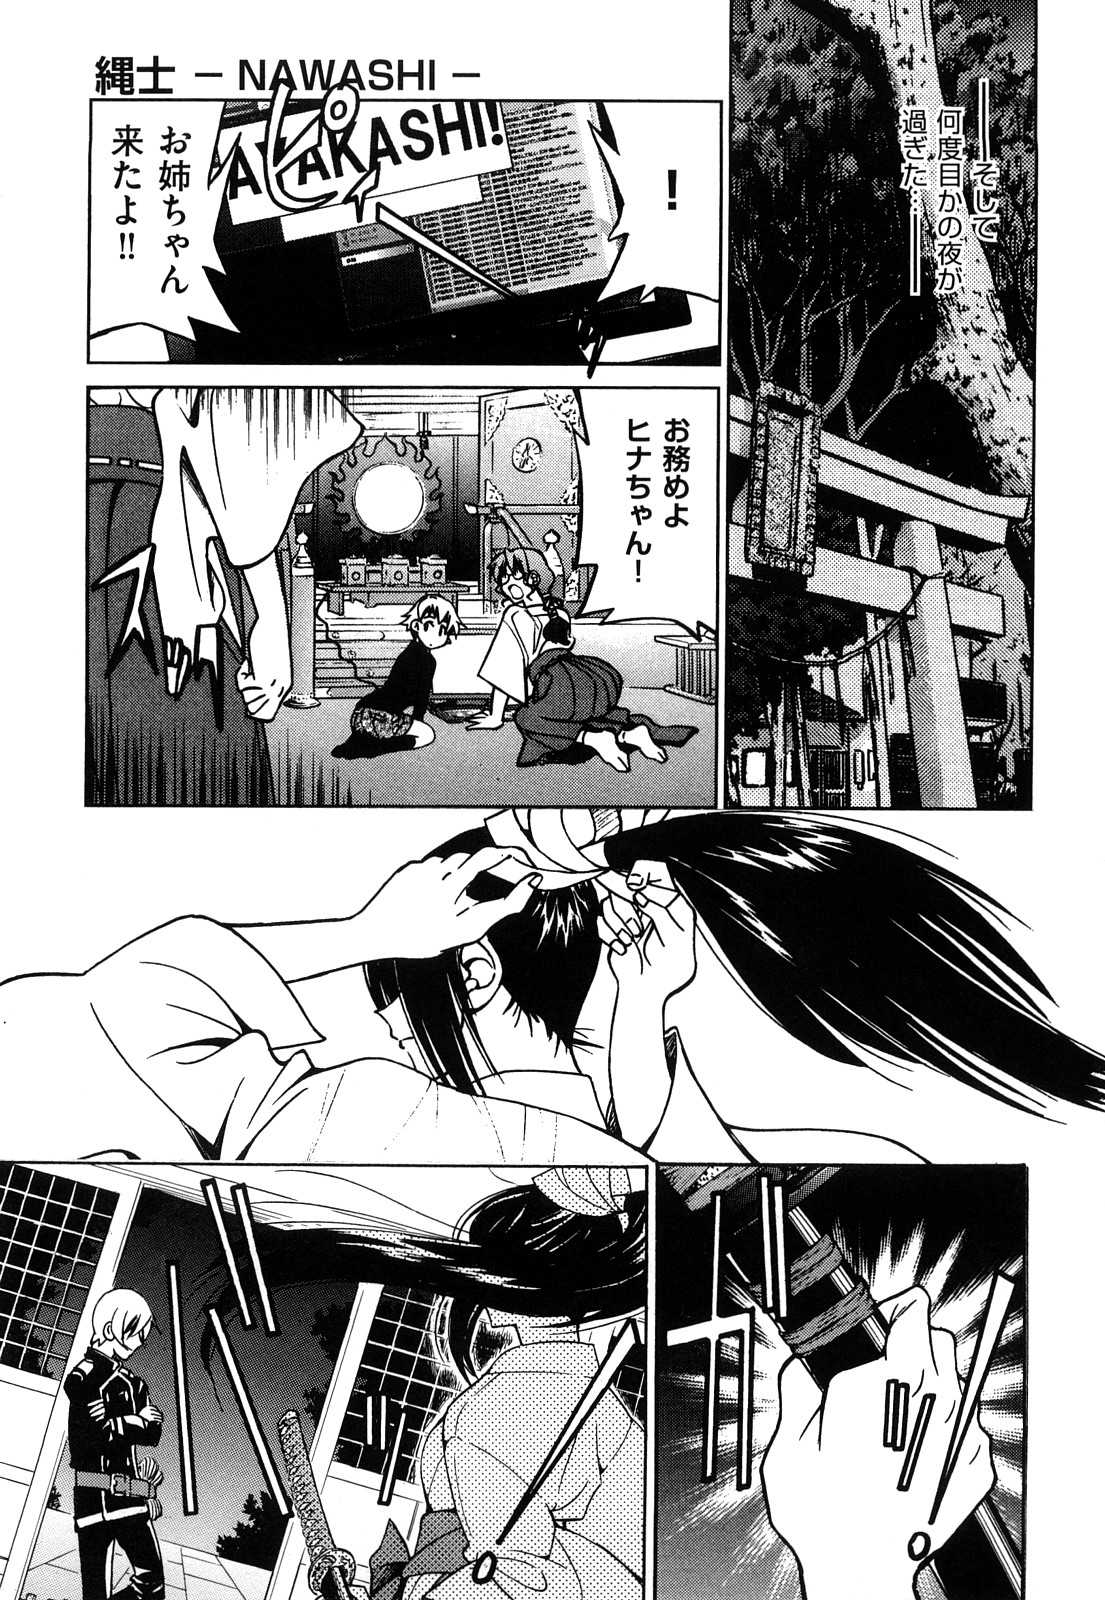 [Inoue Yoshihisa] Nawashi (成年コミック) [井上よしひさ] 縄士 [2009-10-28-207]